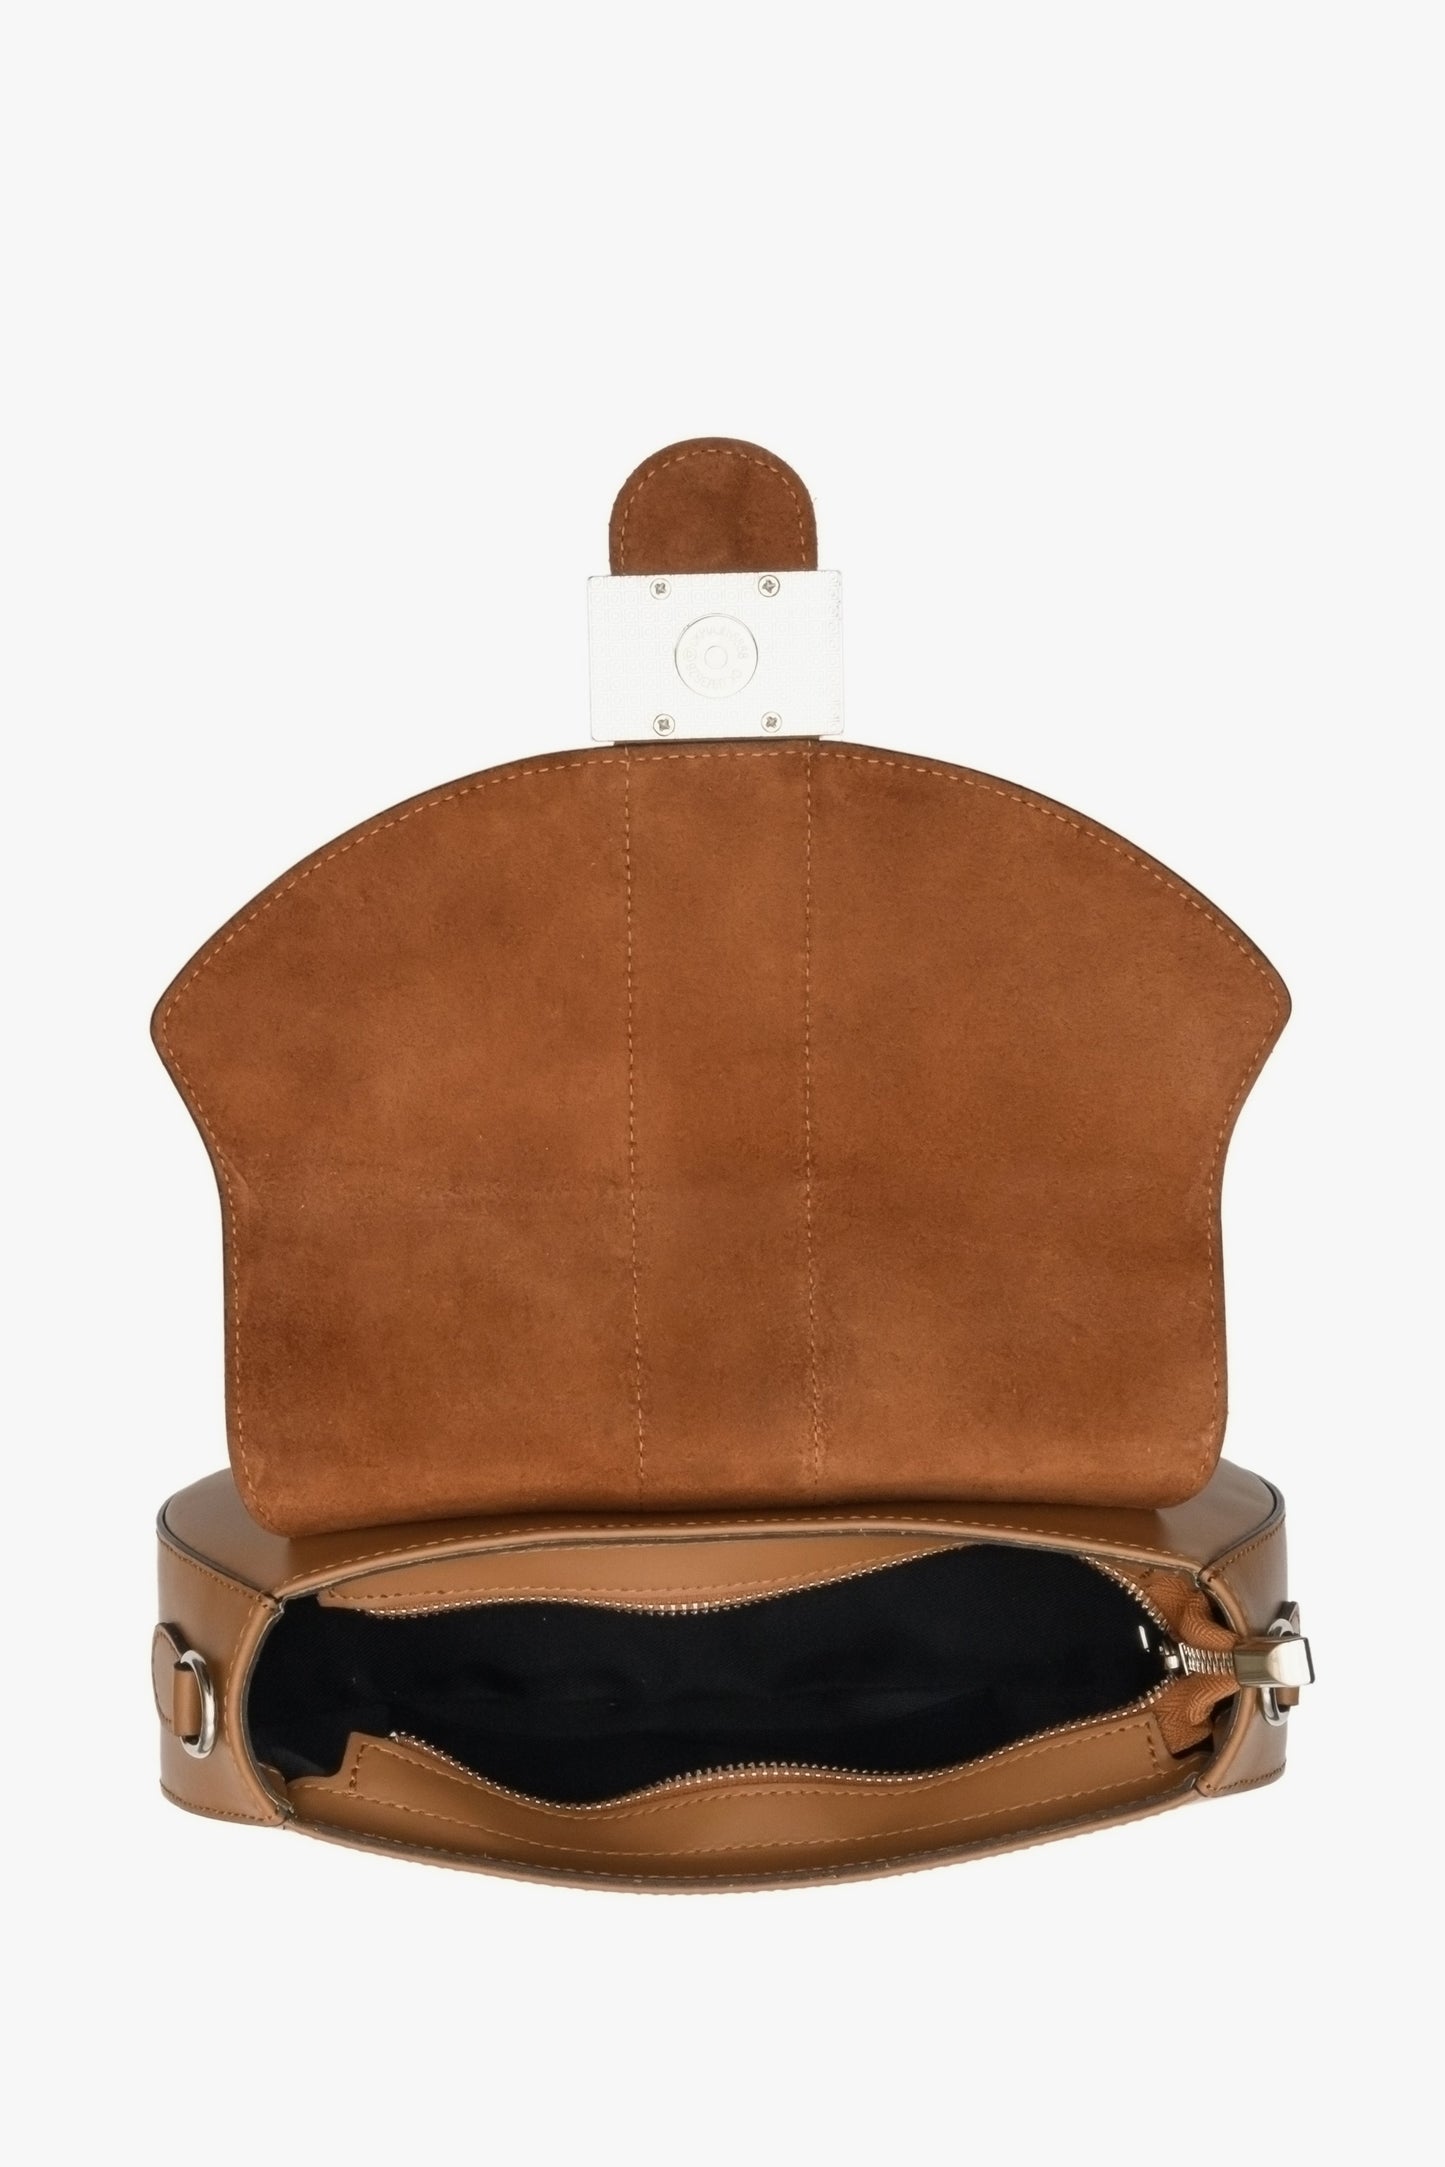 Damska torebka w kształcie podkowy w kolorze brązowym Estro - wnętrze modelu.